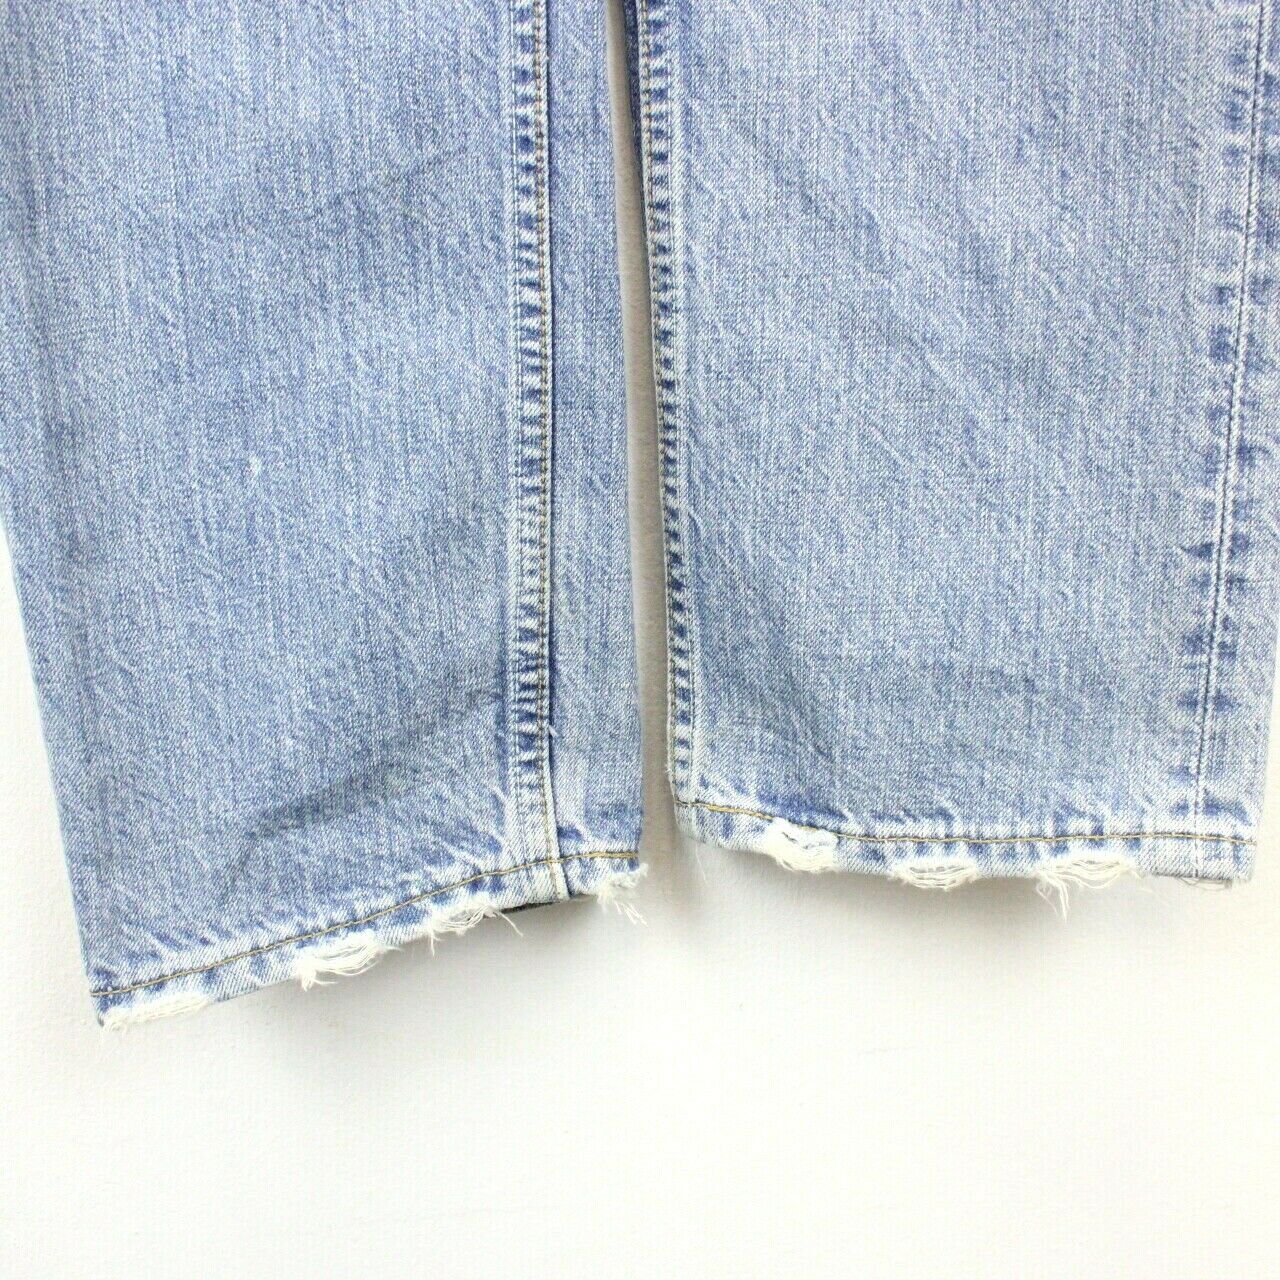 Womens LEVIS 501 Jeans Light Blue | W30 L30